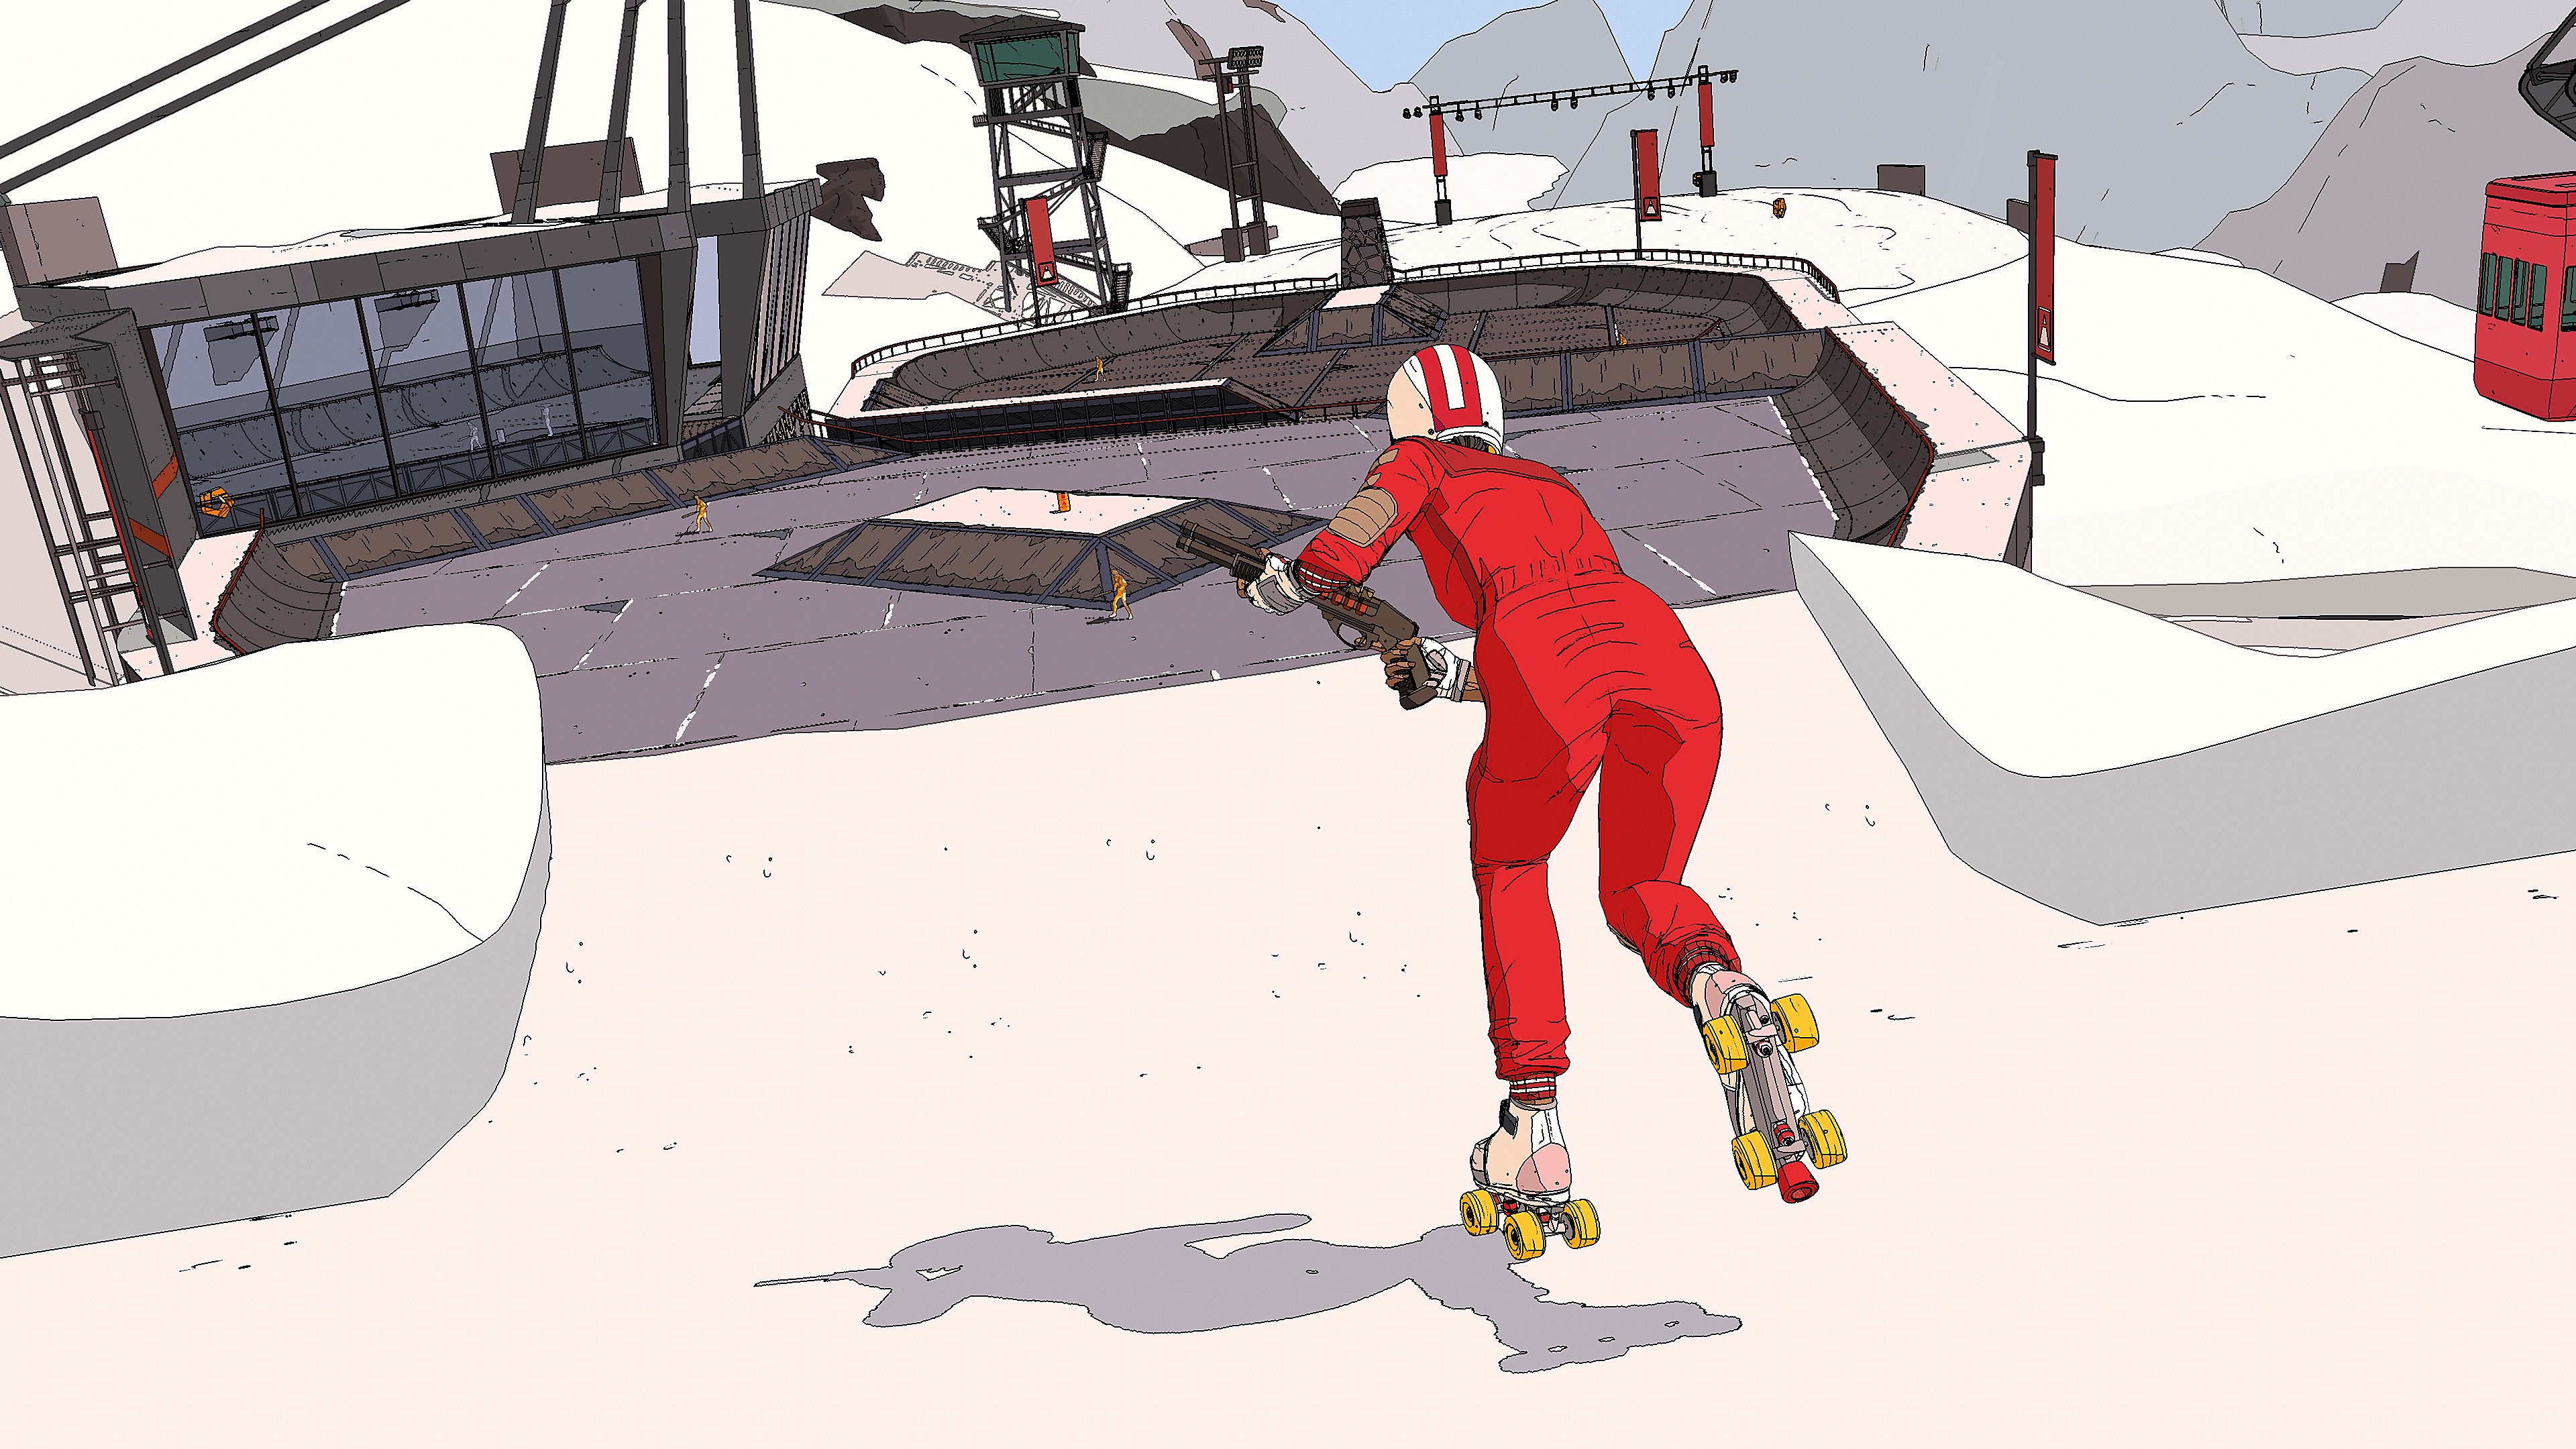 Istantanea della schermata di Rollerdrome che mostra una persona su uno skateboard che indossa tuta e casco, con in mano un fucile